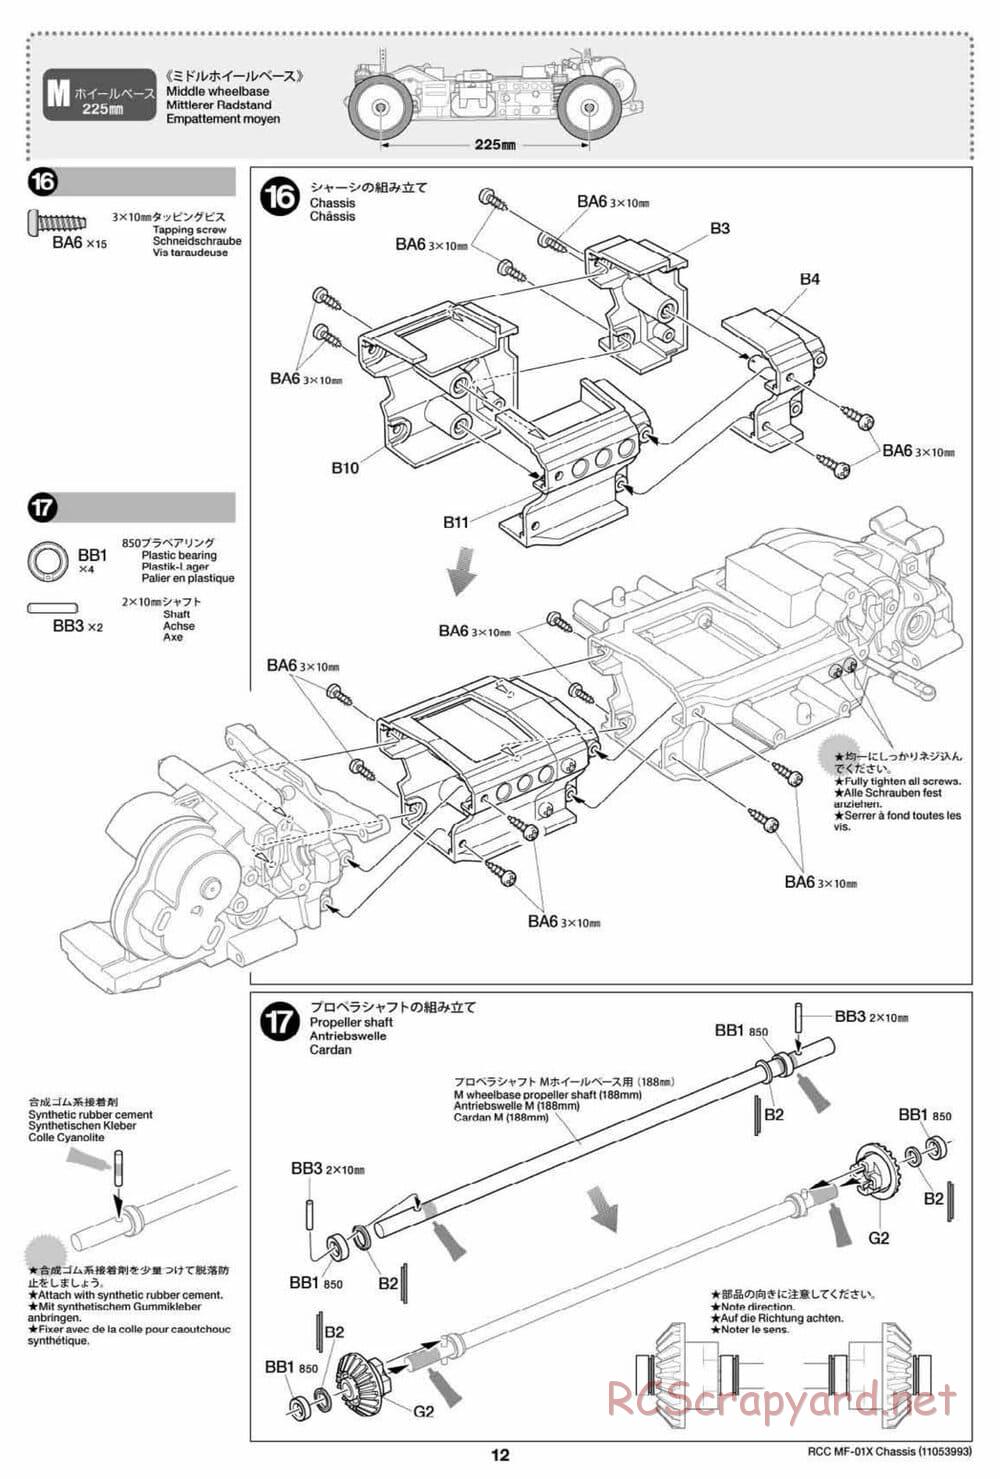 Tamiya - MF-01X Chassis - Manual - Page 12